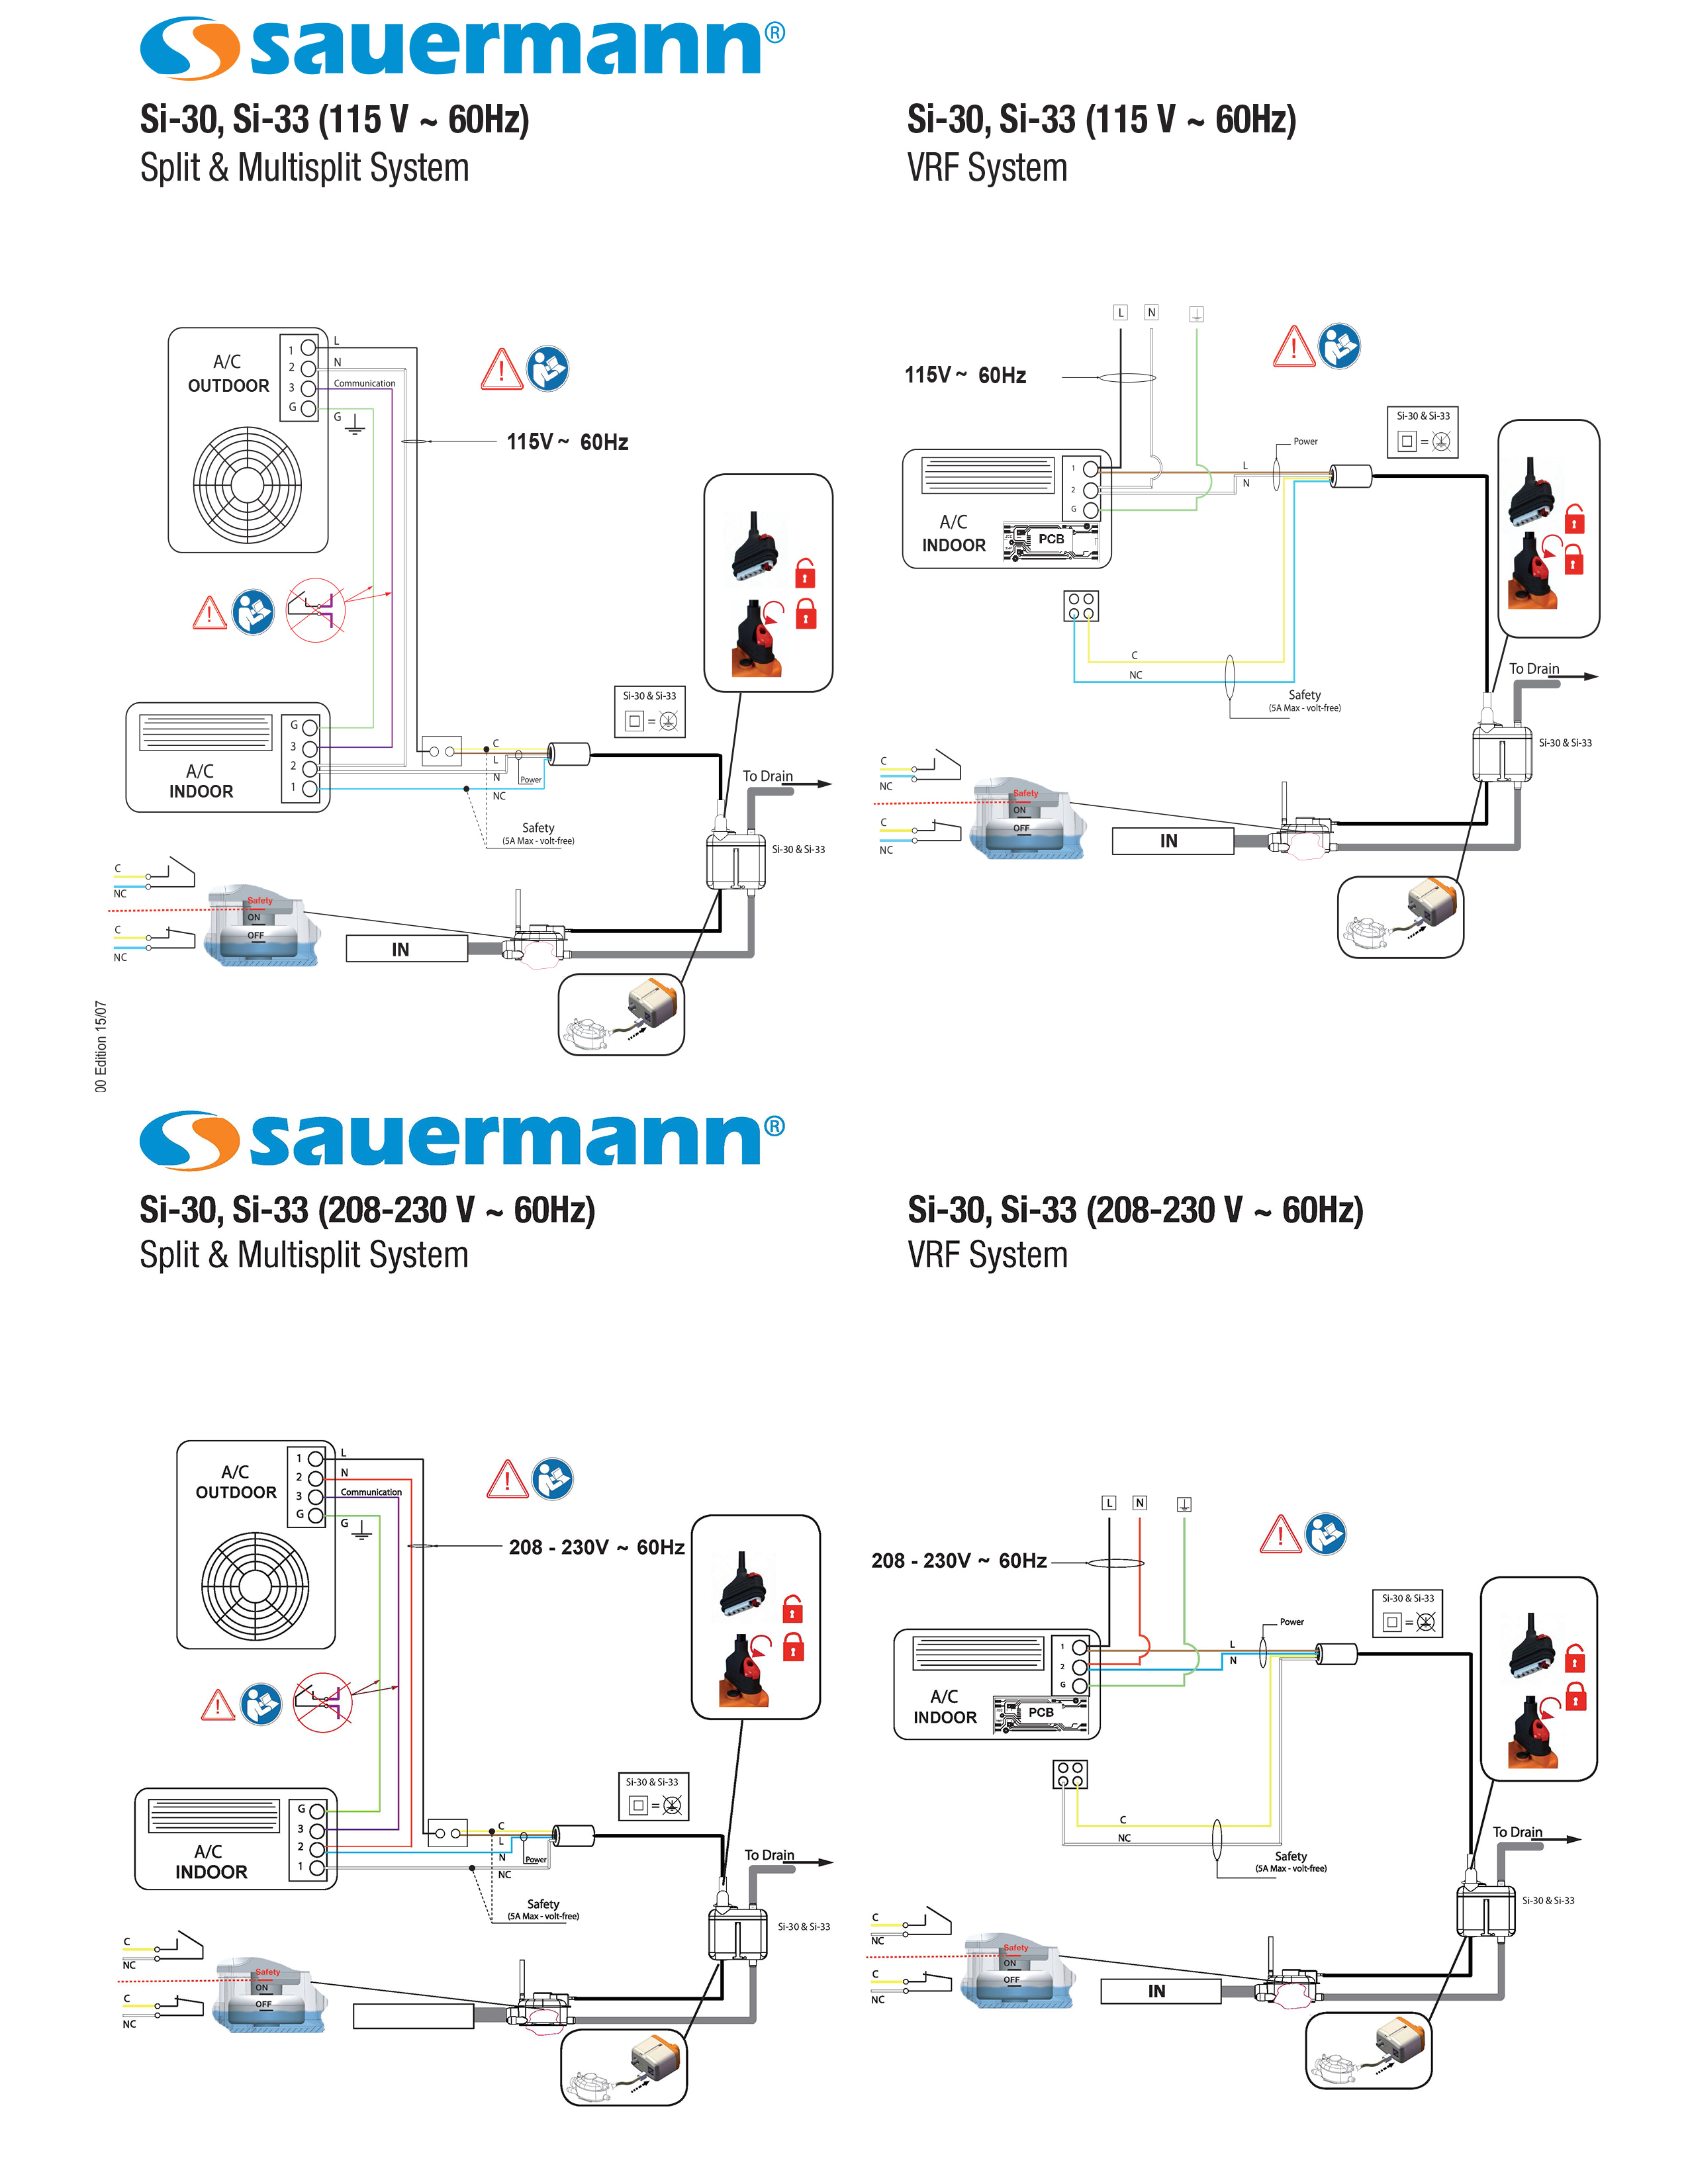 aspen pump wiring diagram beautiful aspen pump wiring diagram fresh aspen pump wiring diagram elegant si jpg